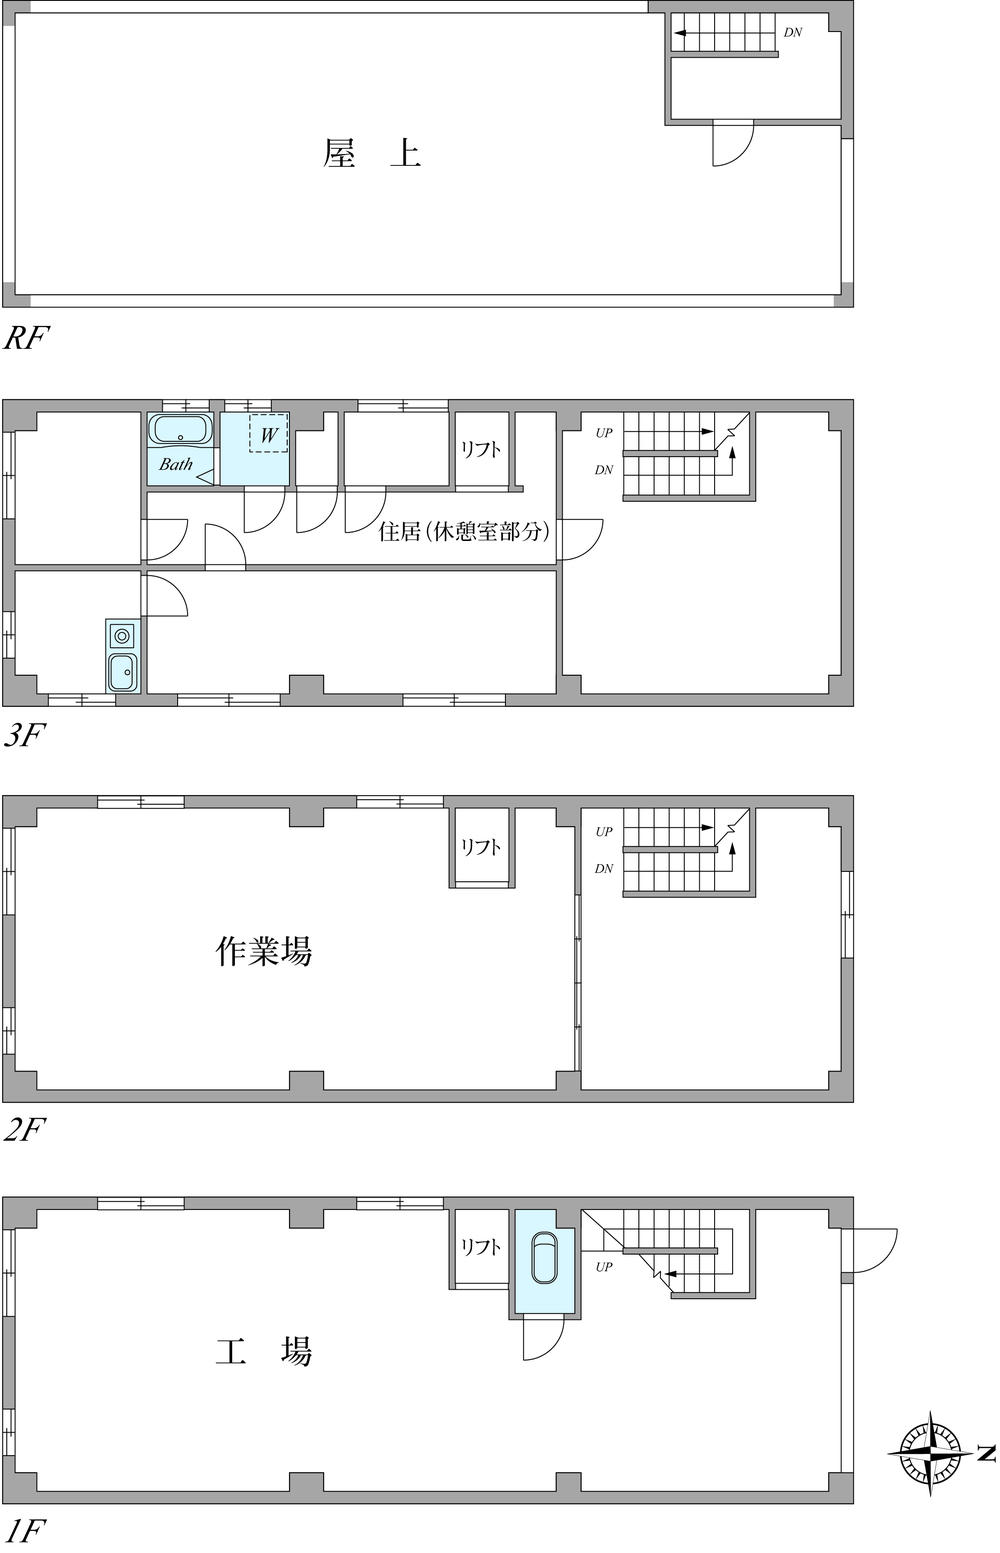 Floor plan. 65,800,000 yen, 2DK, Land area 123.87 sq m , Building area 201.84 sq m floor plan